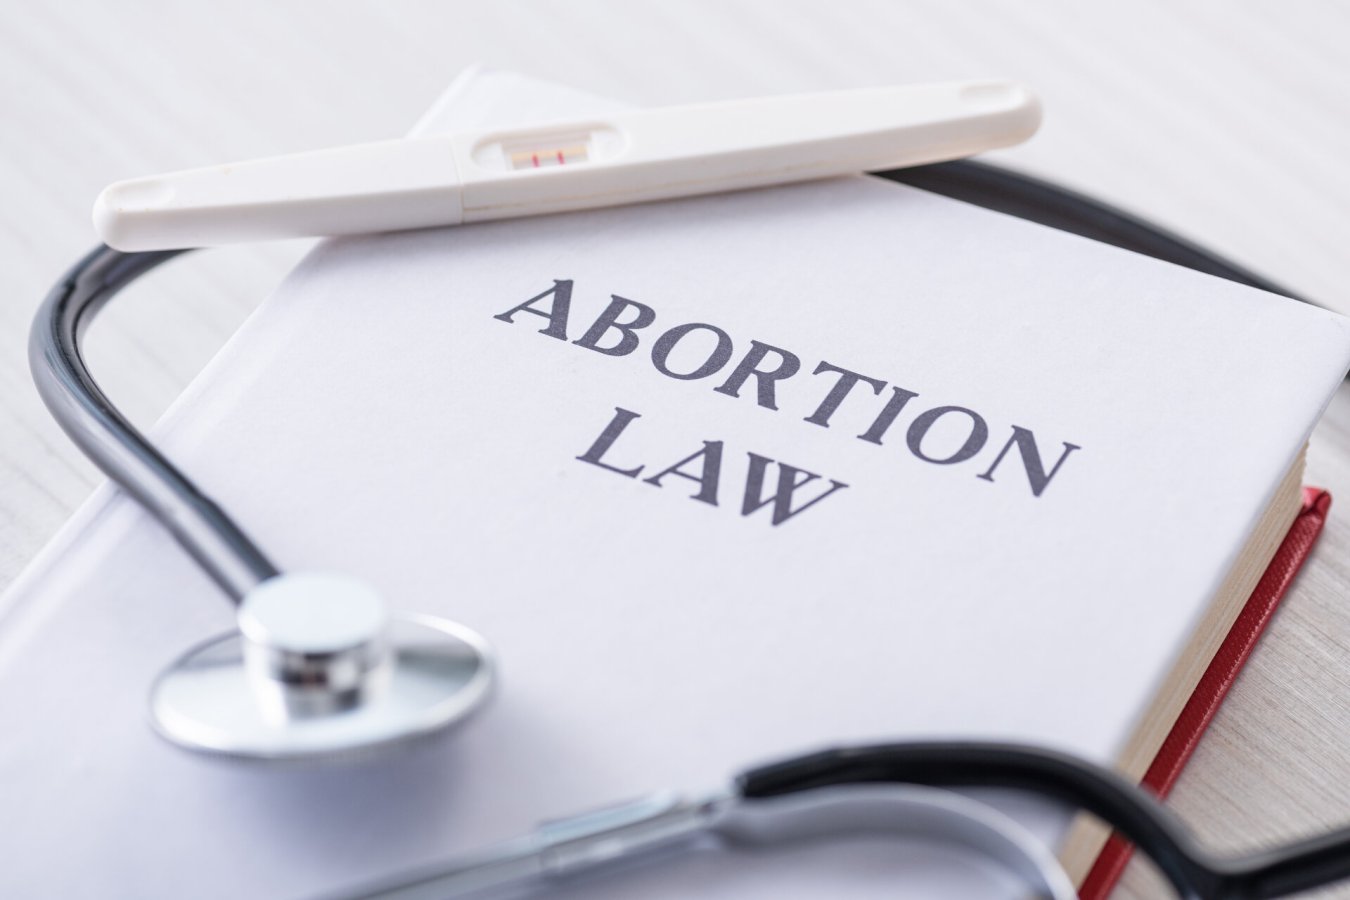 He aquí por qué las leyes de aborto no afectan solo a las mujeres